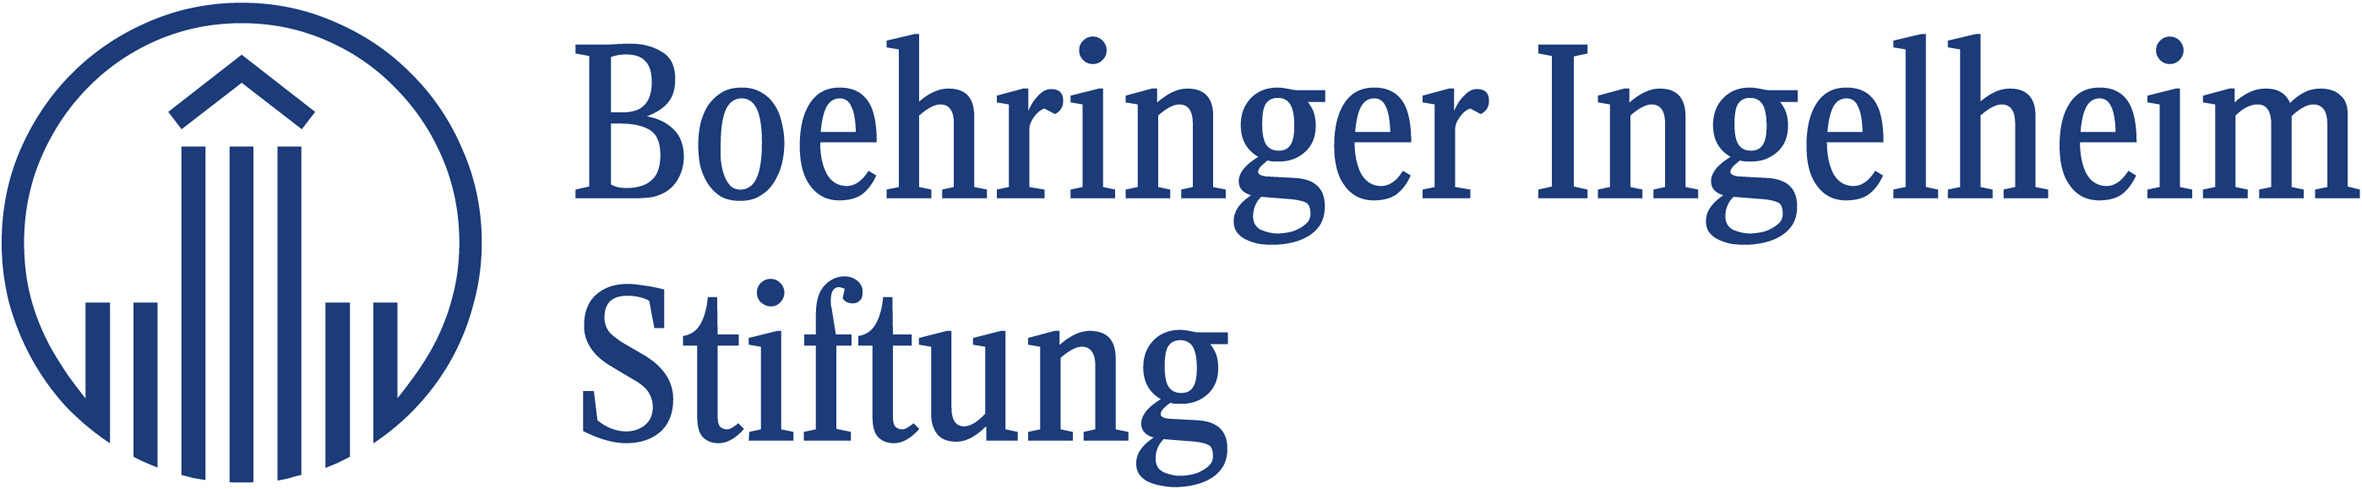 Böhringer Ingelheim Stiftung